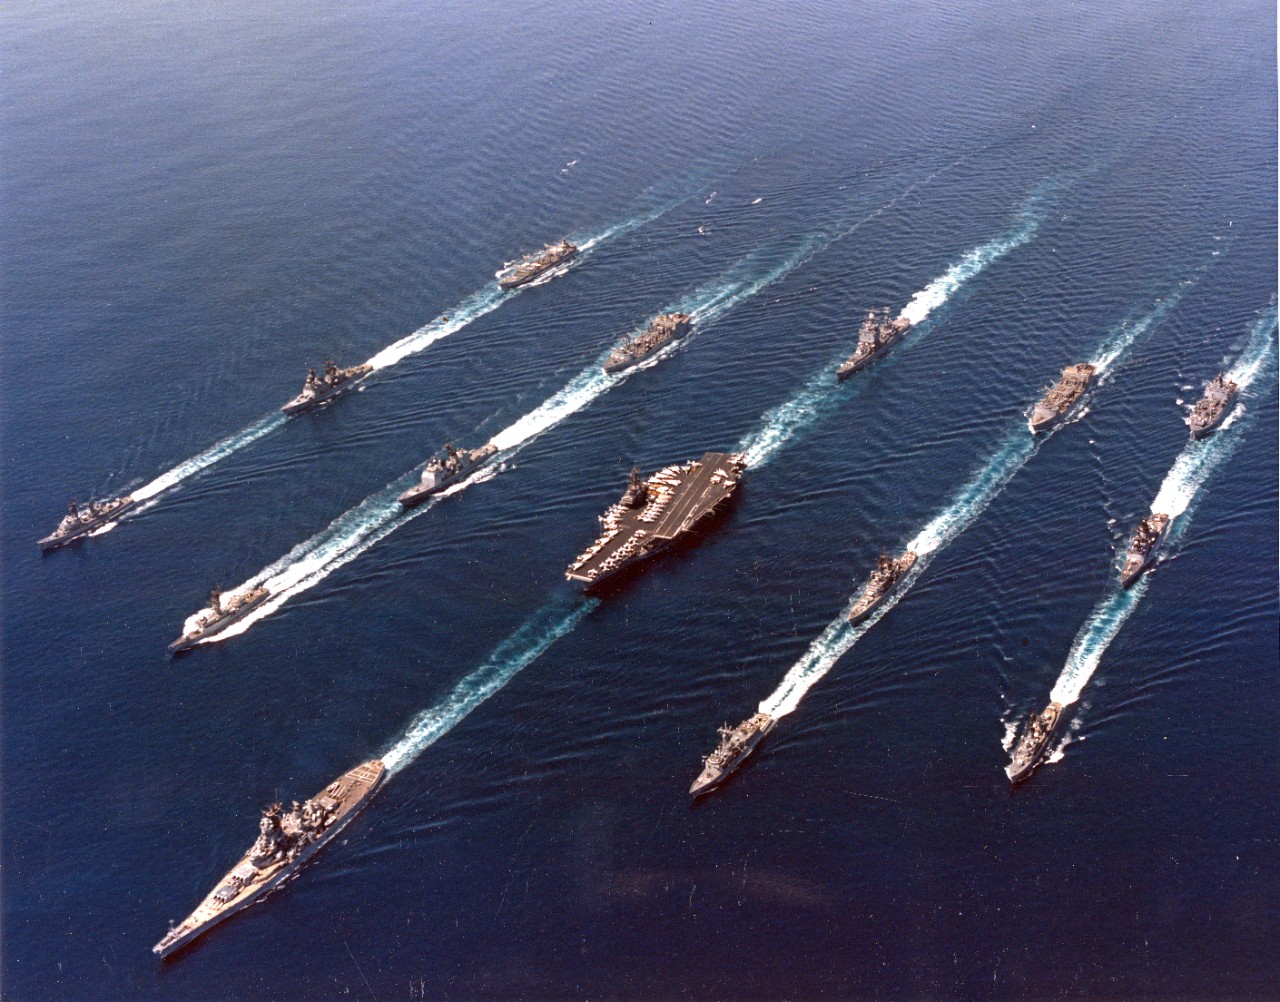 fleet battle sea battle